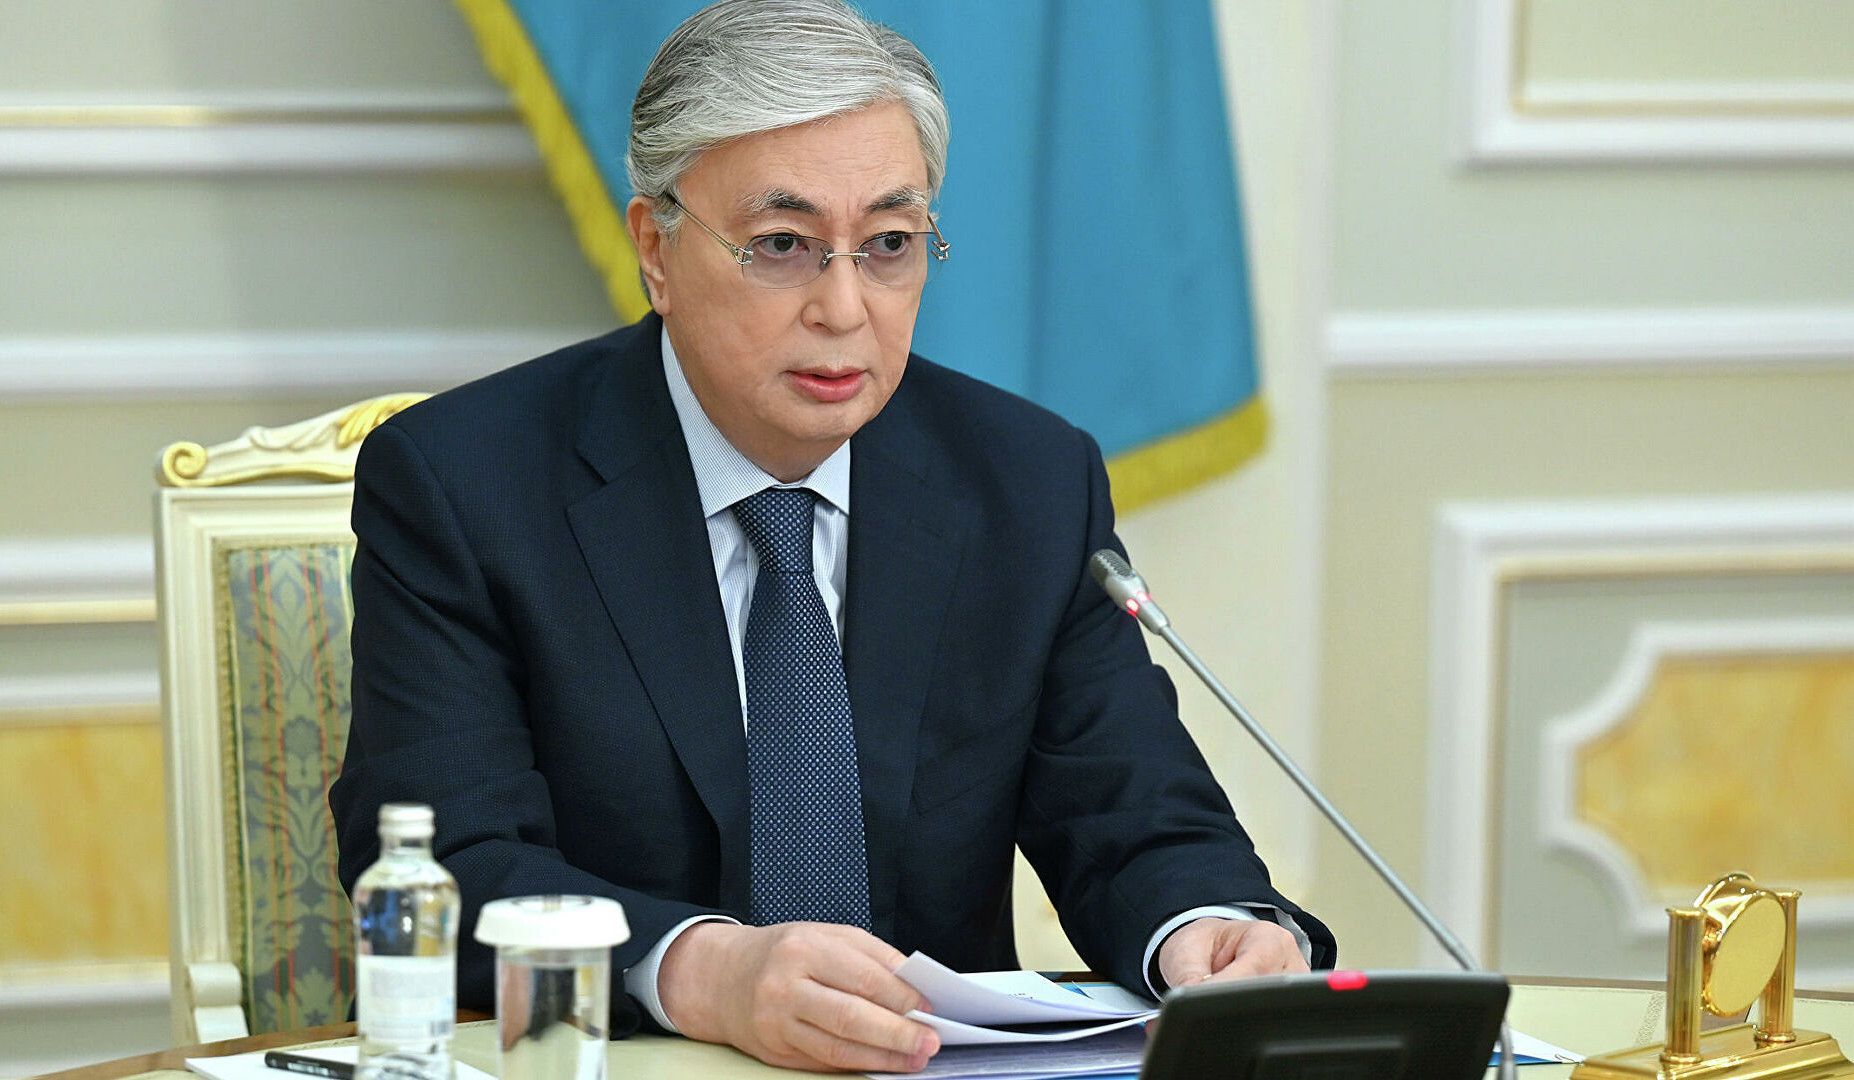 Казахстан заинтересован в скорейшем заключении мирного договора между Арменией и Азербайджаном: Токаев